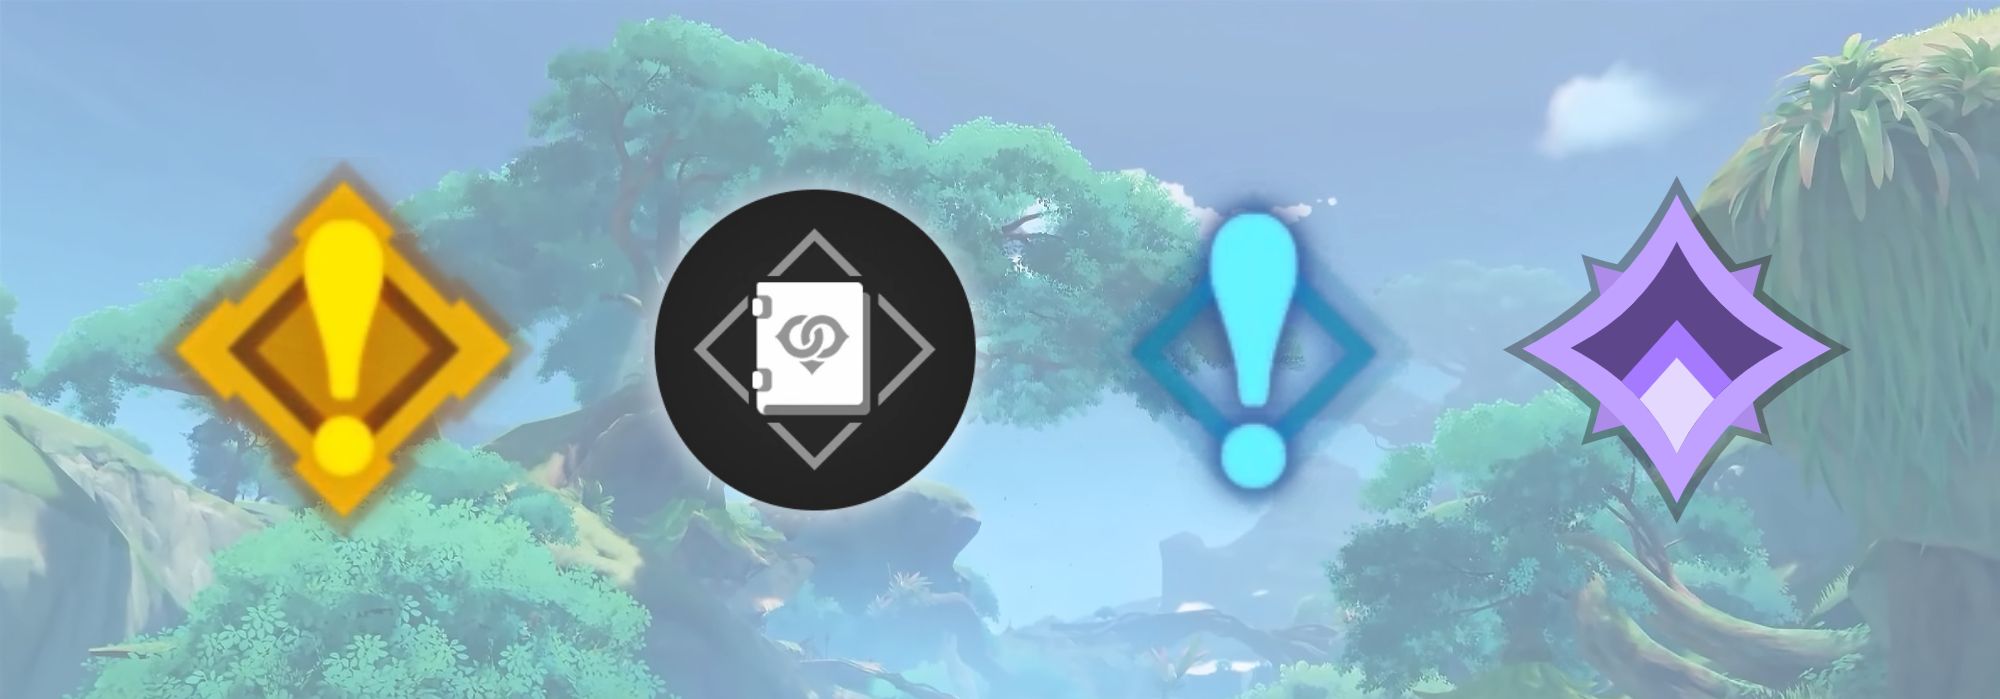 Genshin Impact Quest Symbols